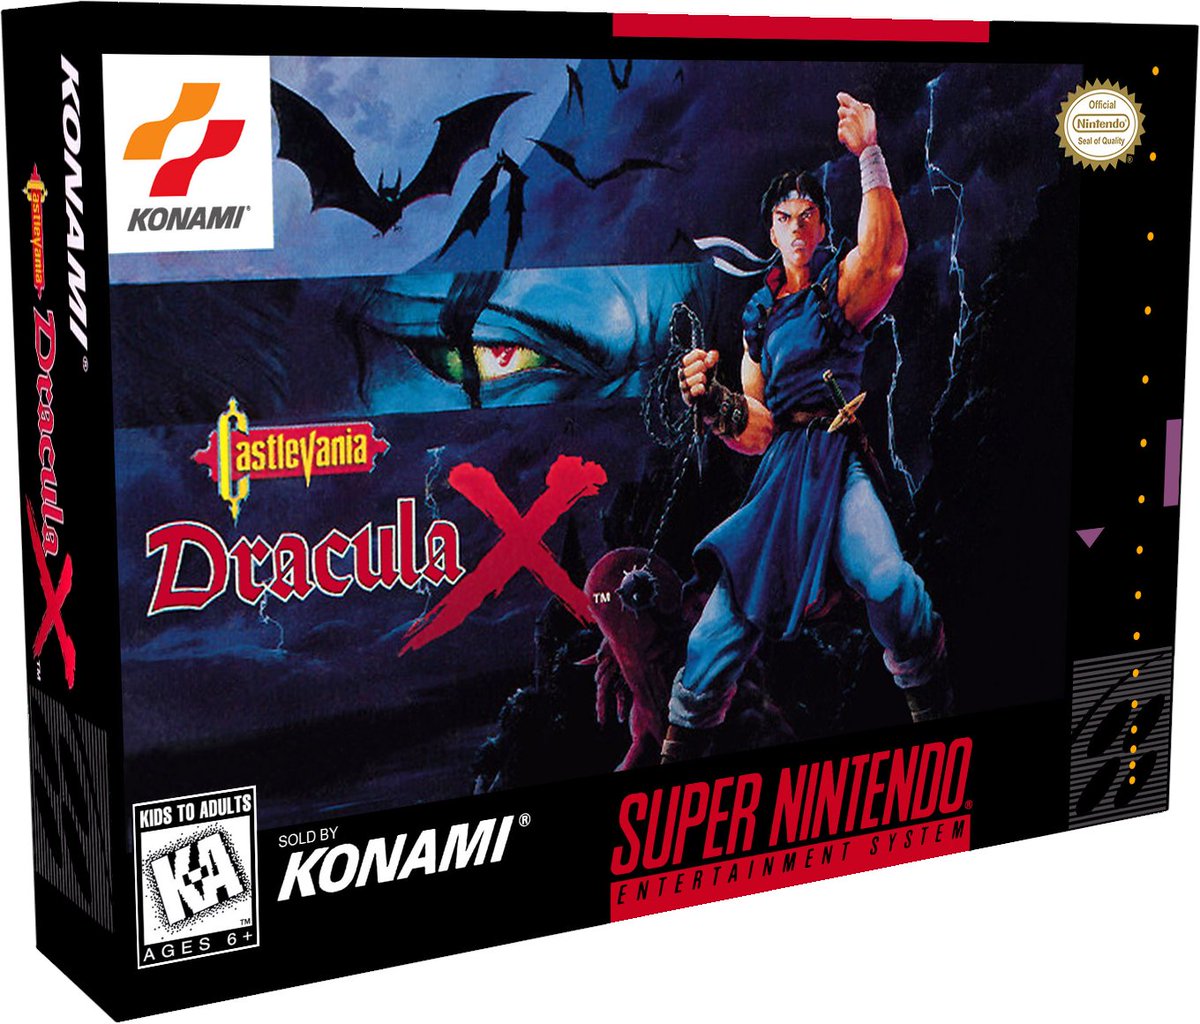 SNES Castlevania Dracula X AKA Super Nintendo Castlevania: Dracula X